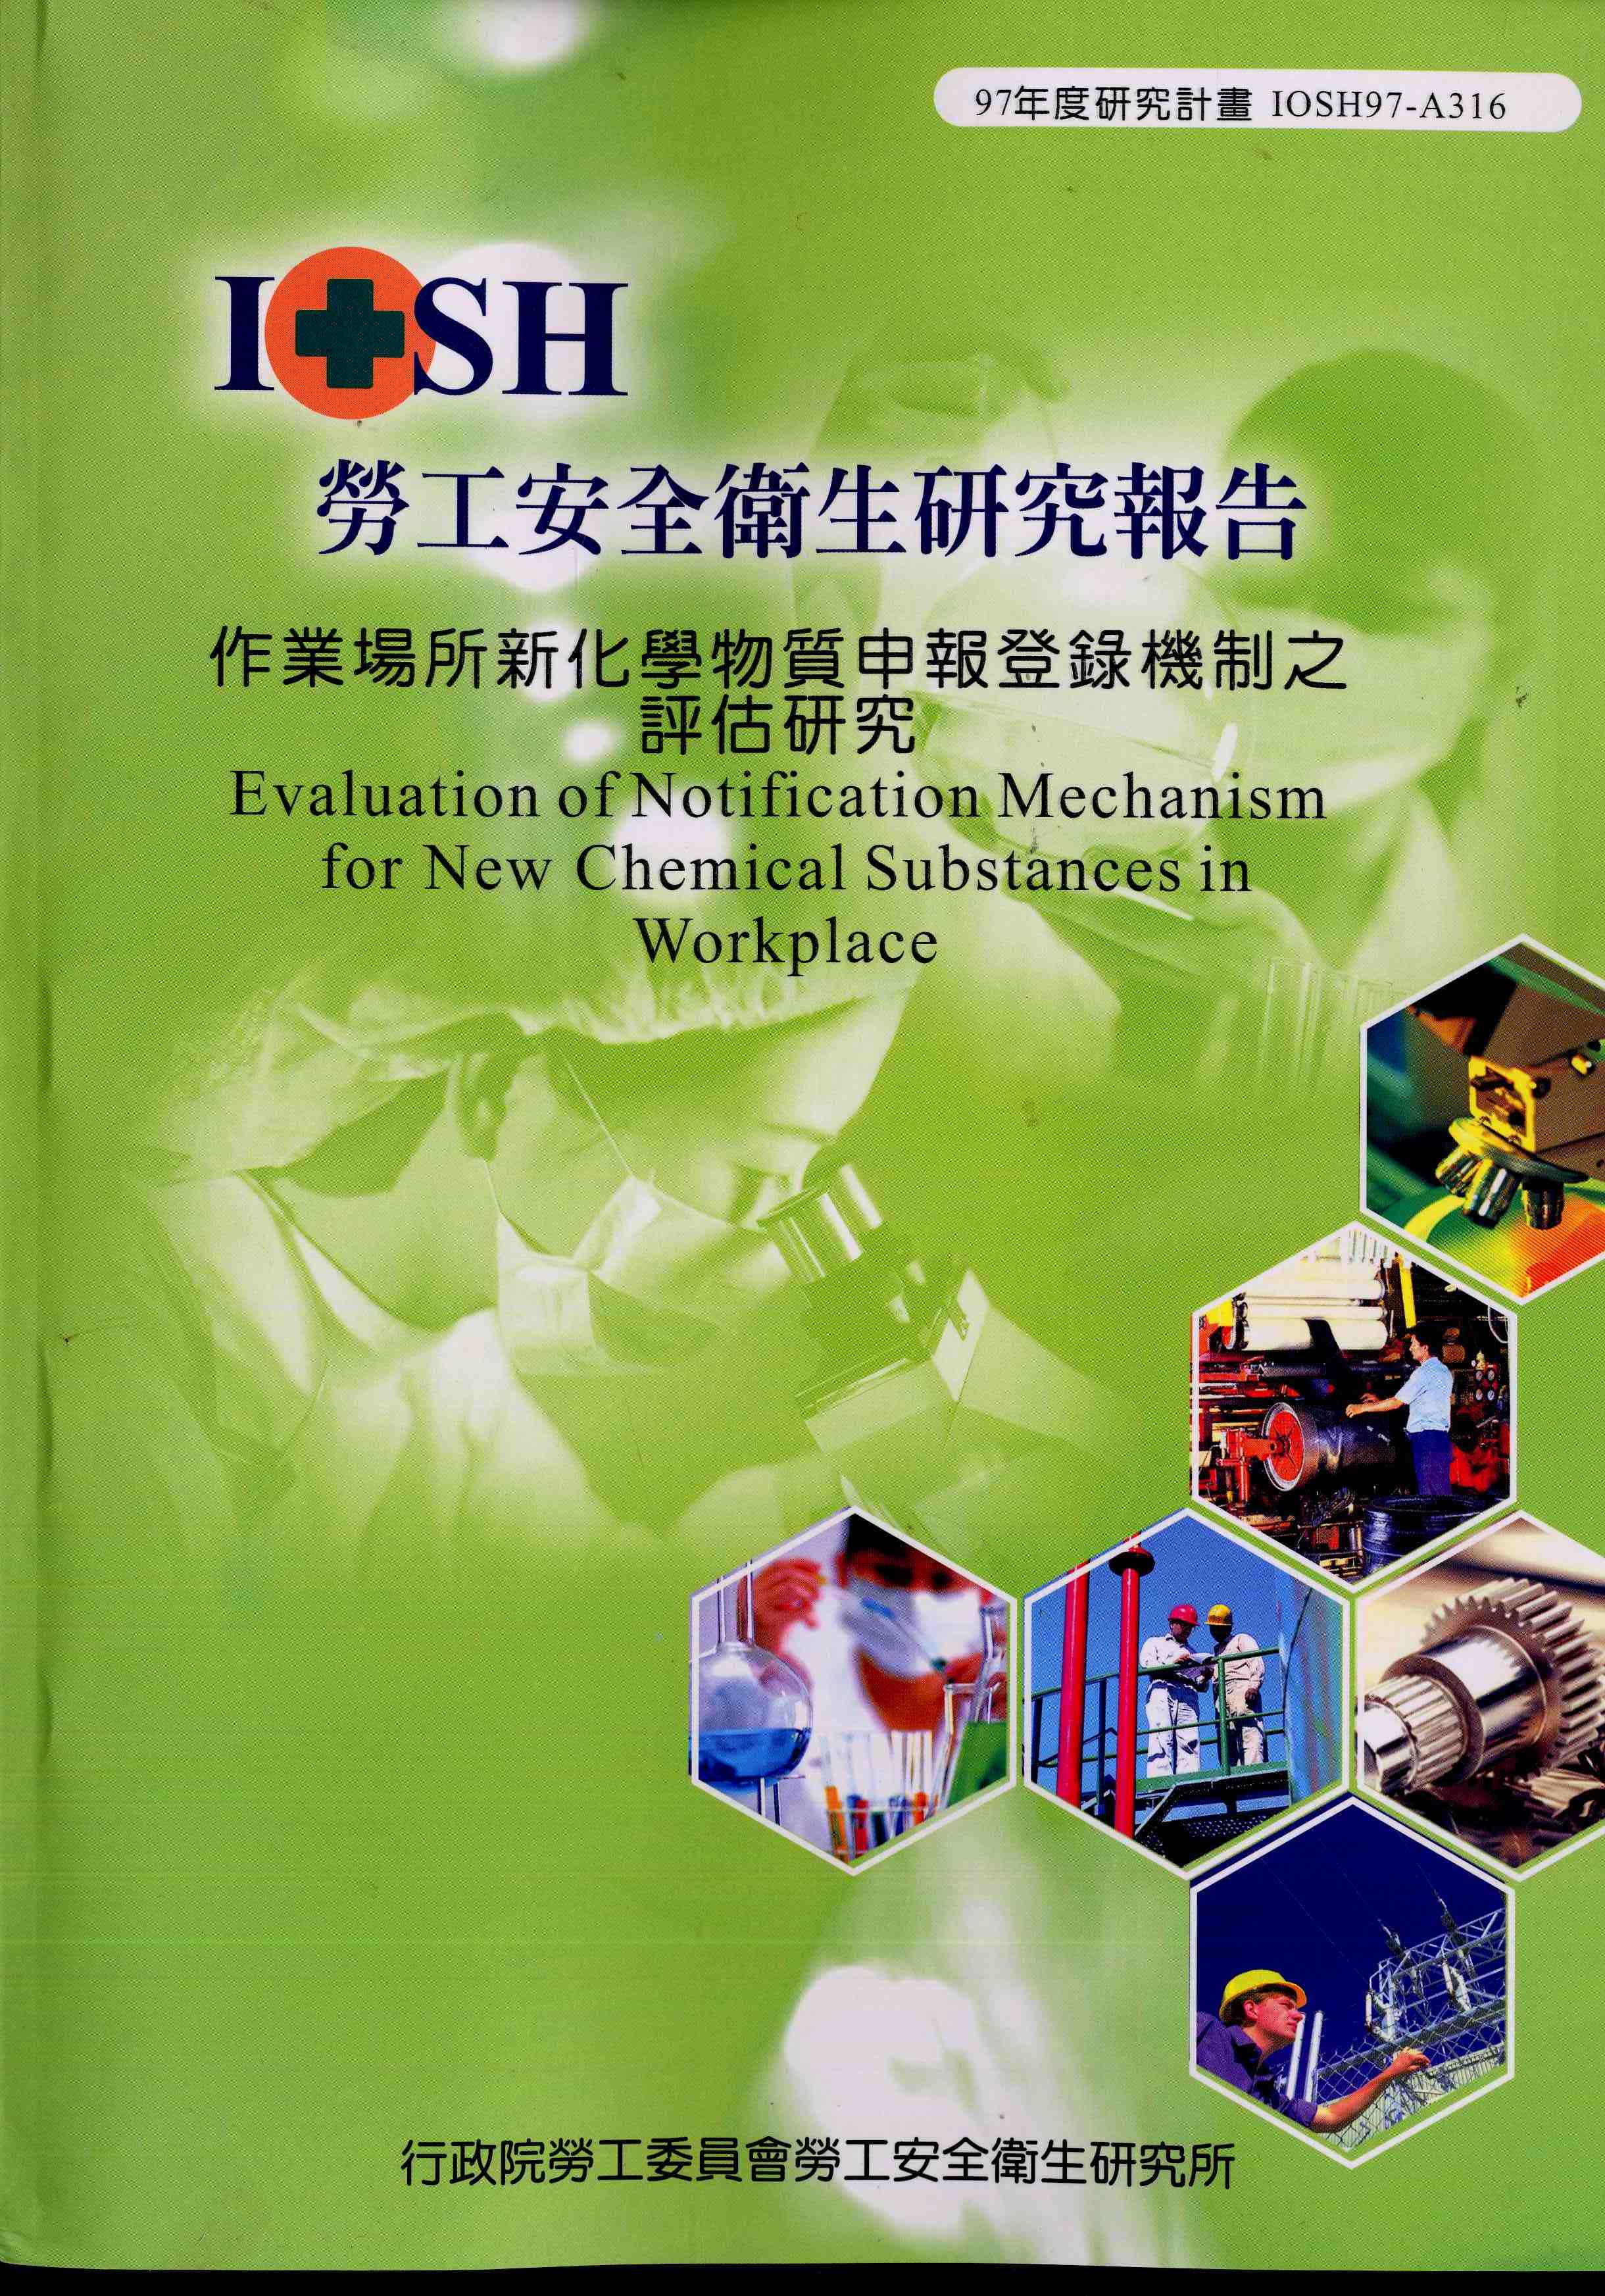 作業場所新化學物質申報登錄機制之評估研究